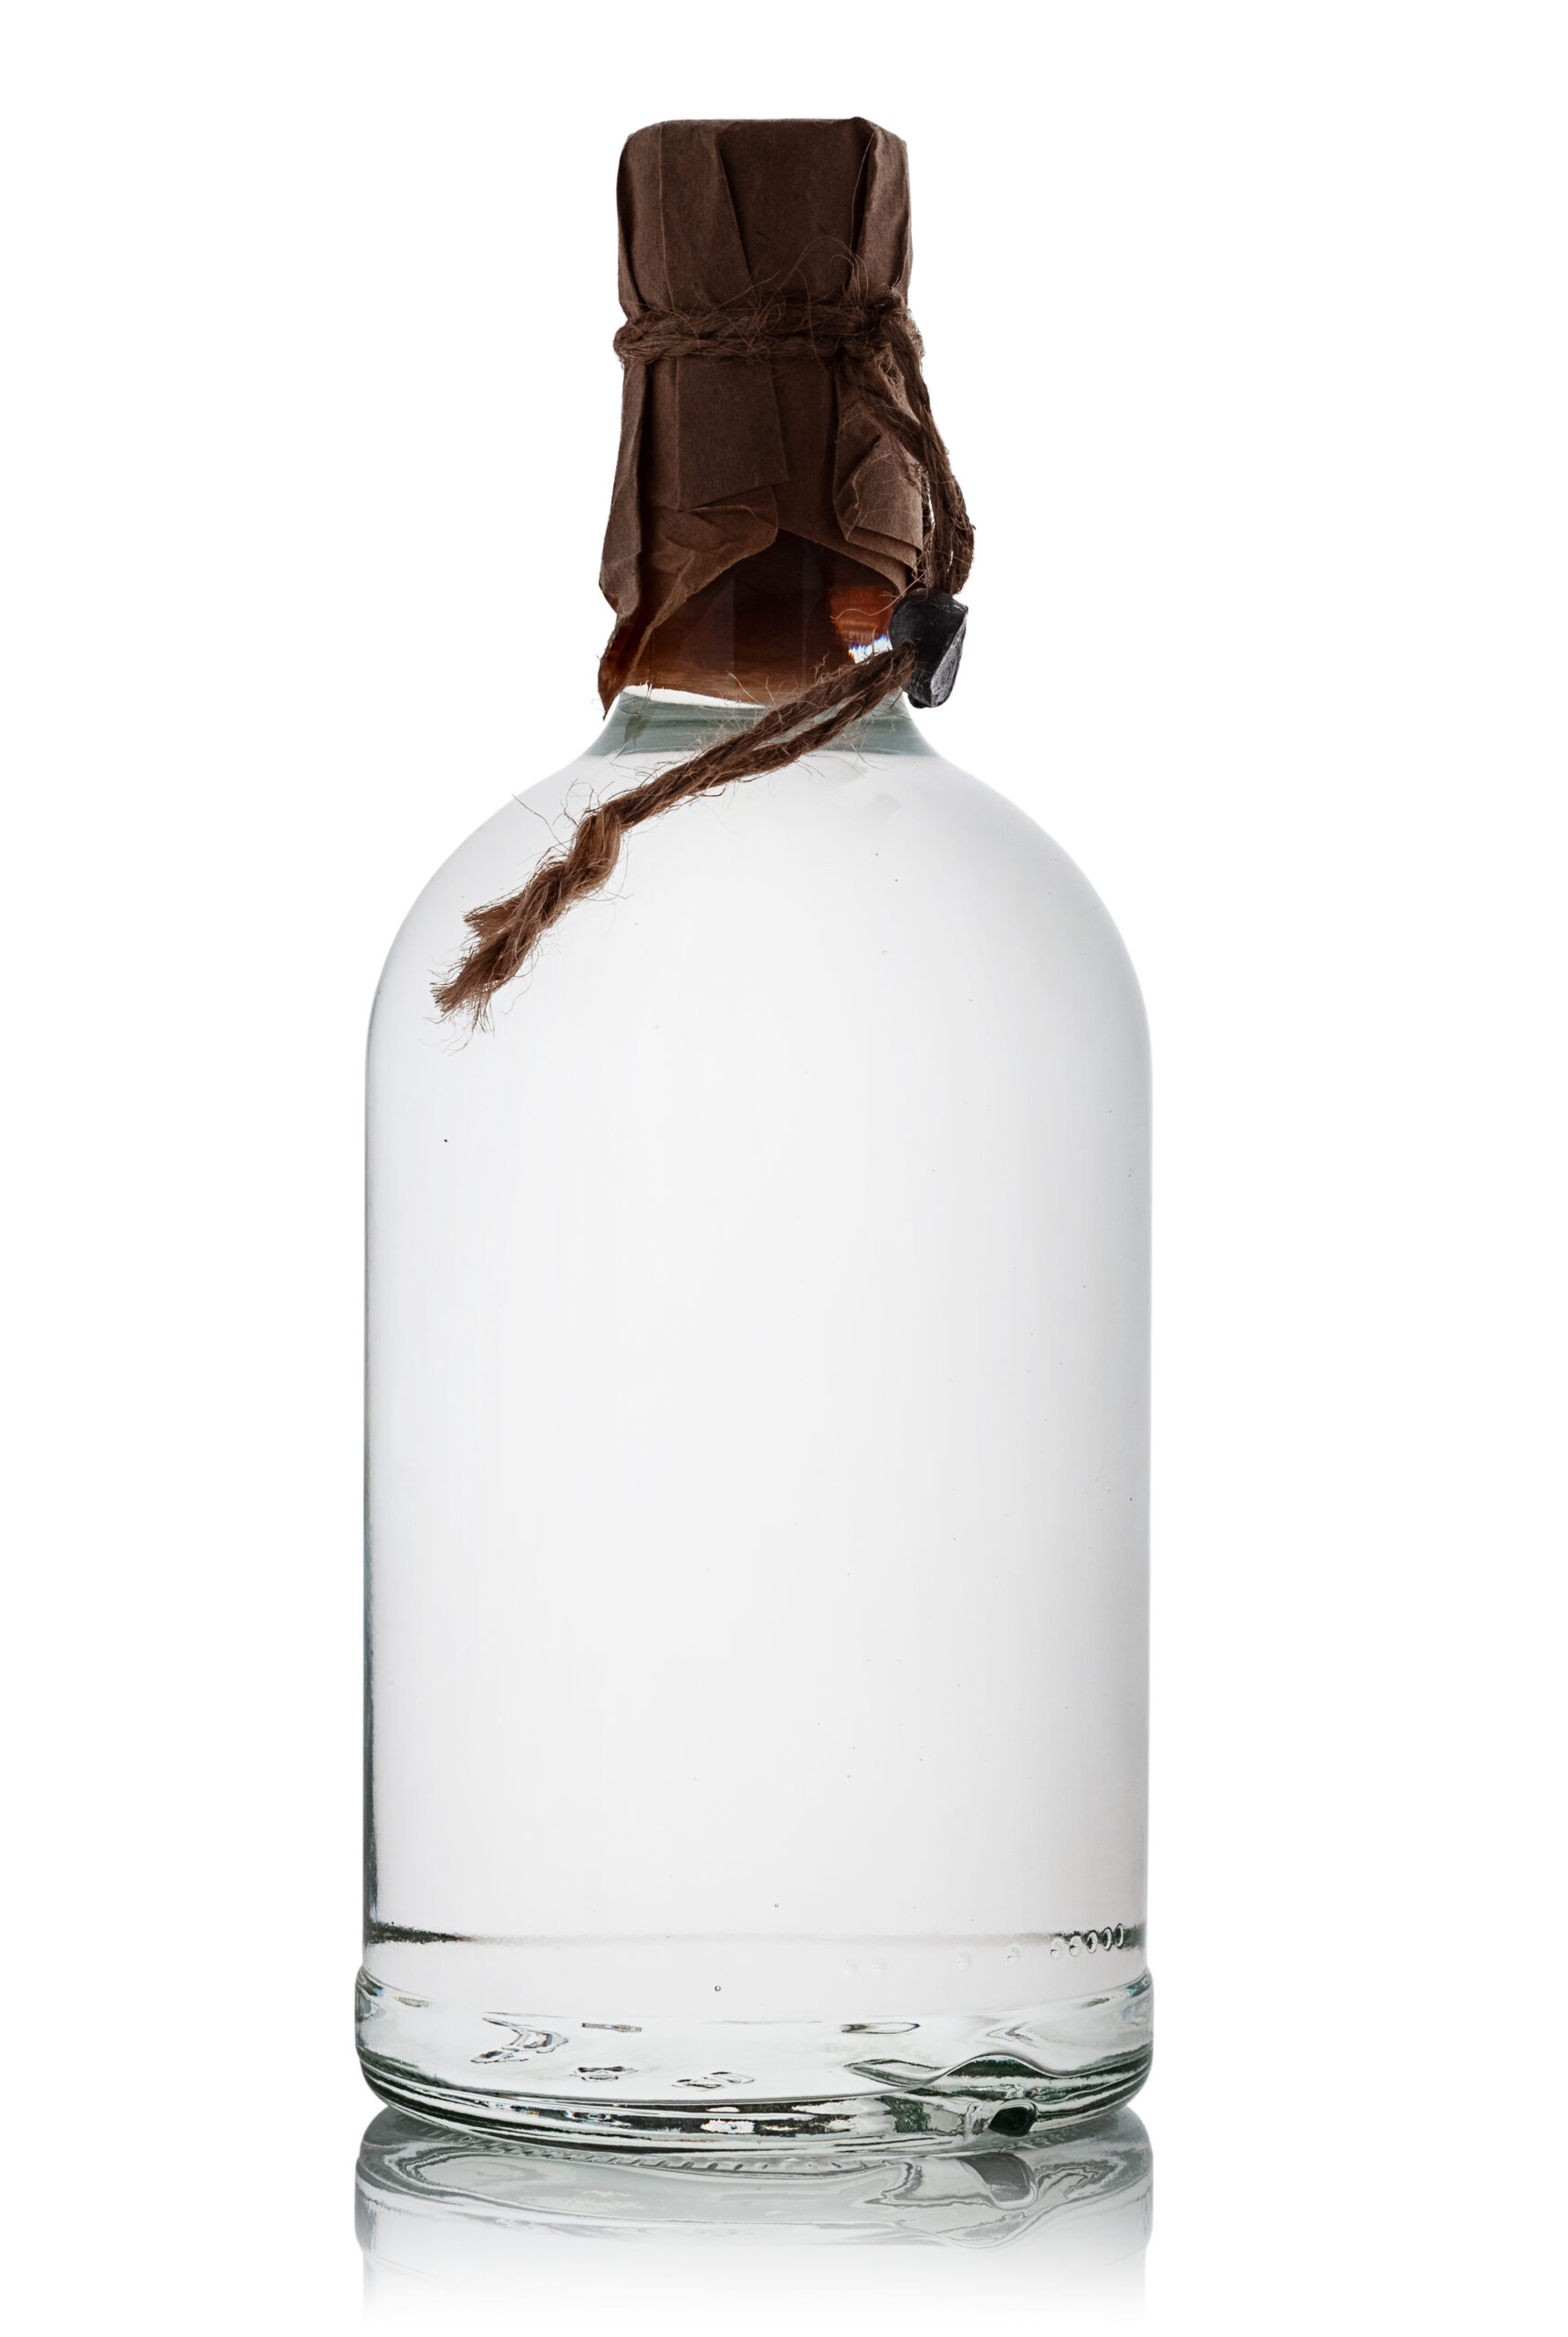 Full bottle of moonshine on white background